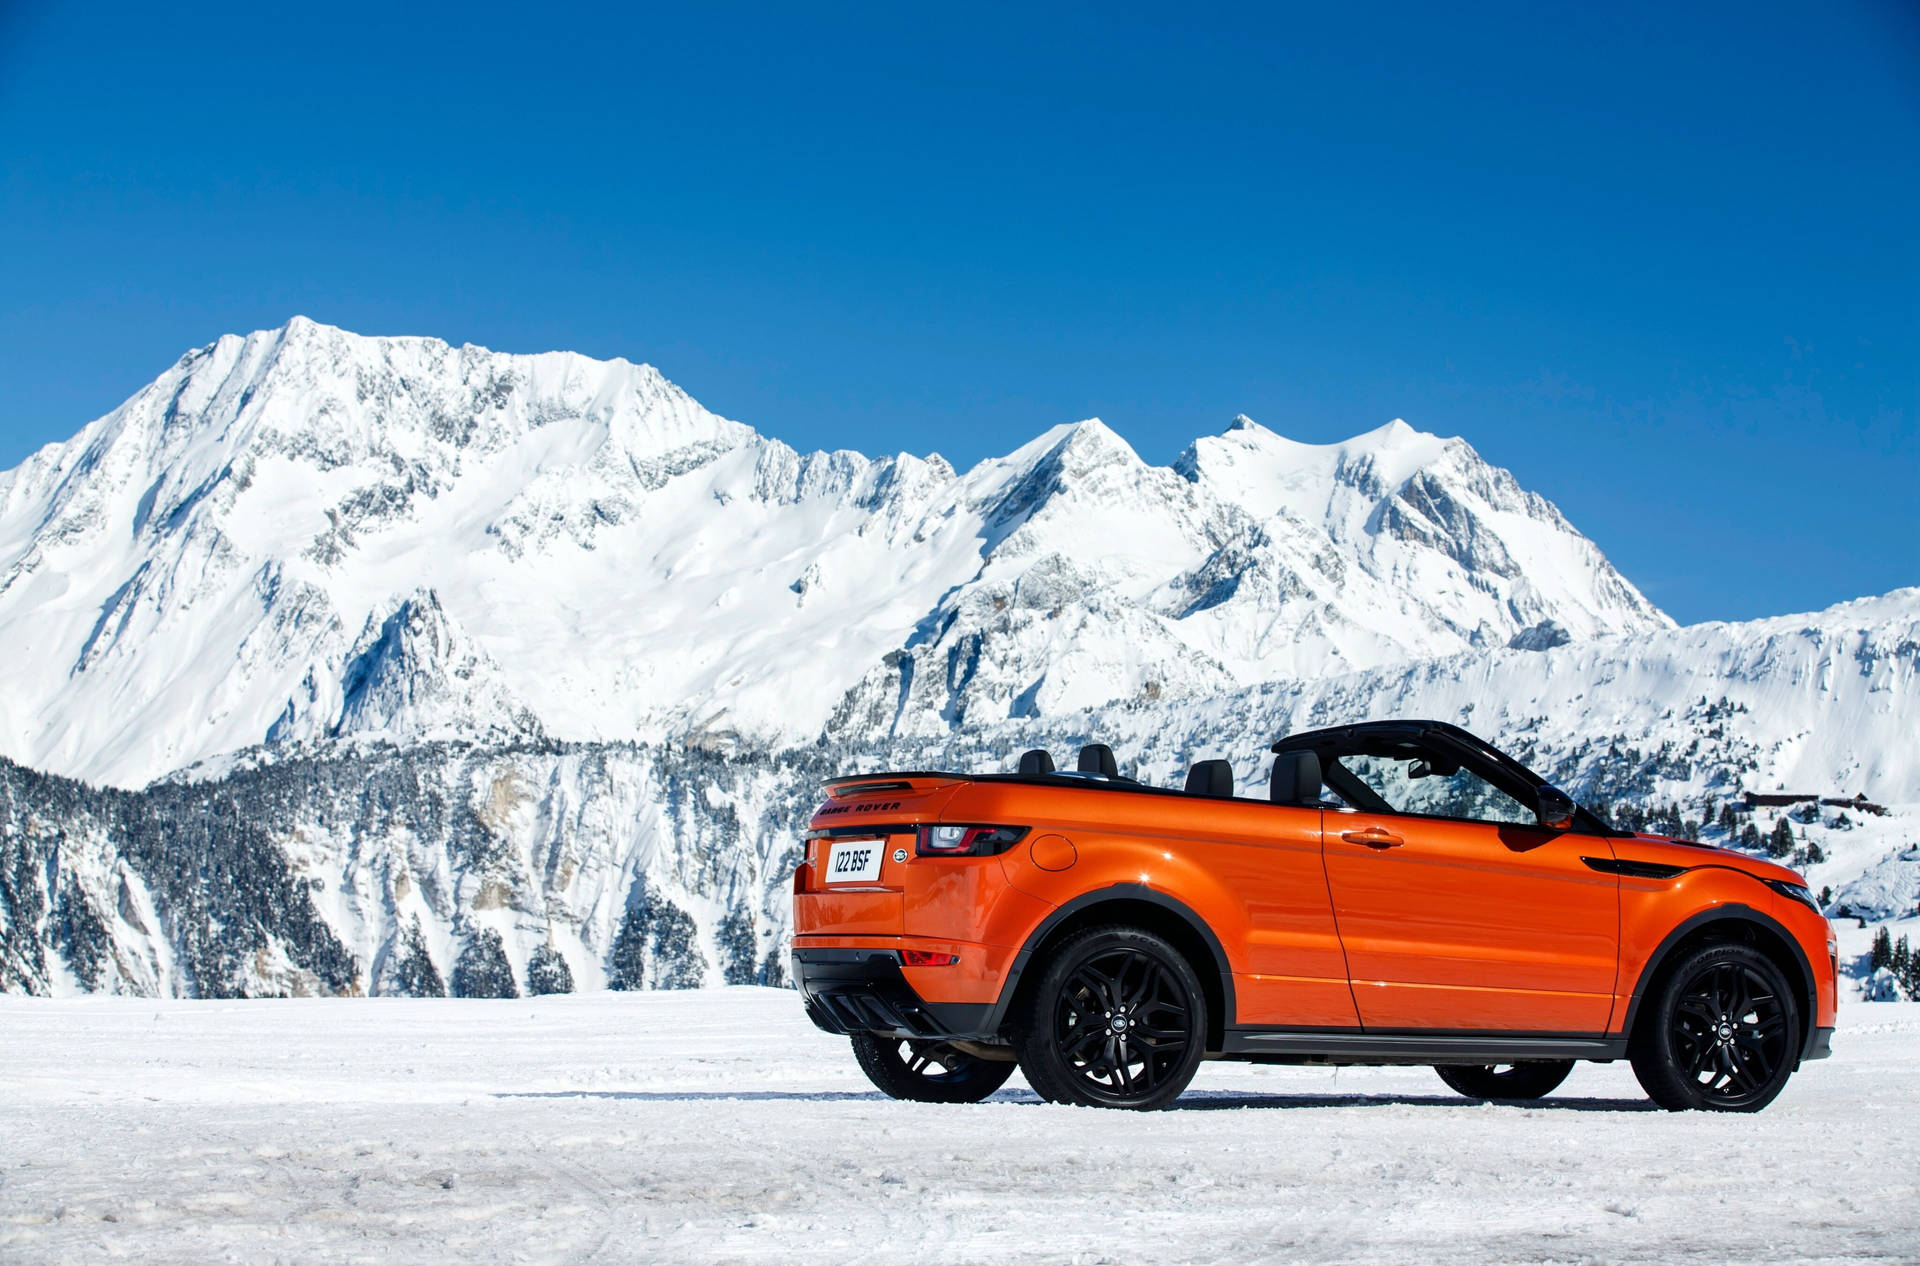 4k Range Rover Snow Wallpaper